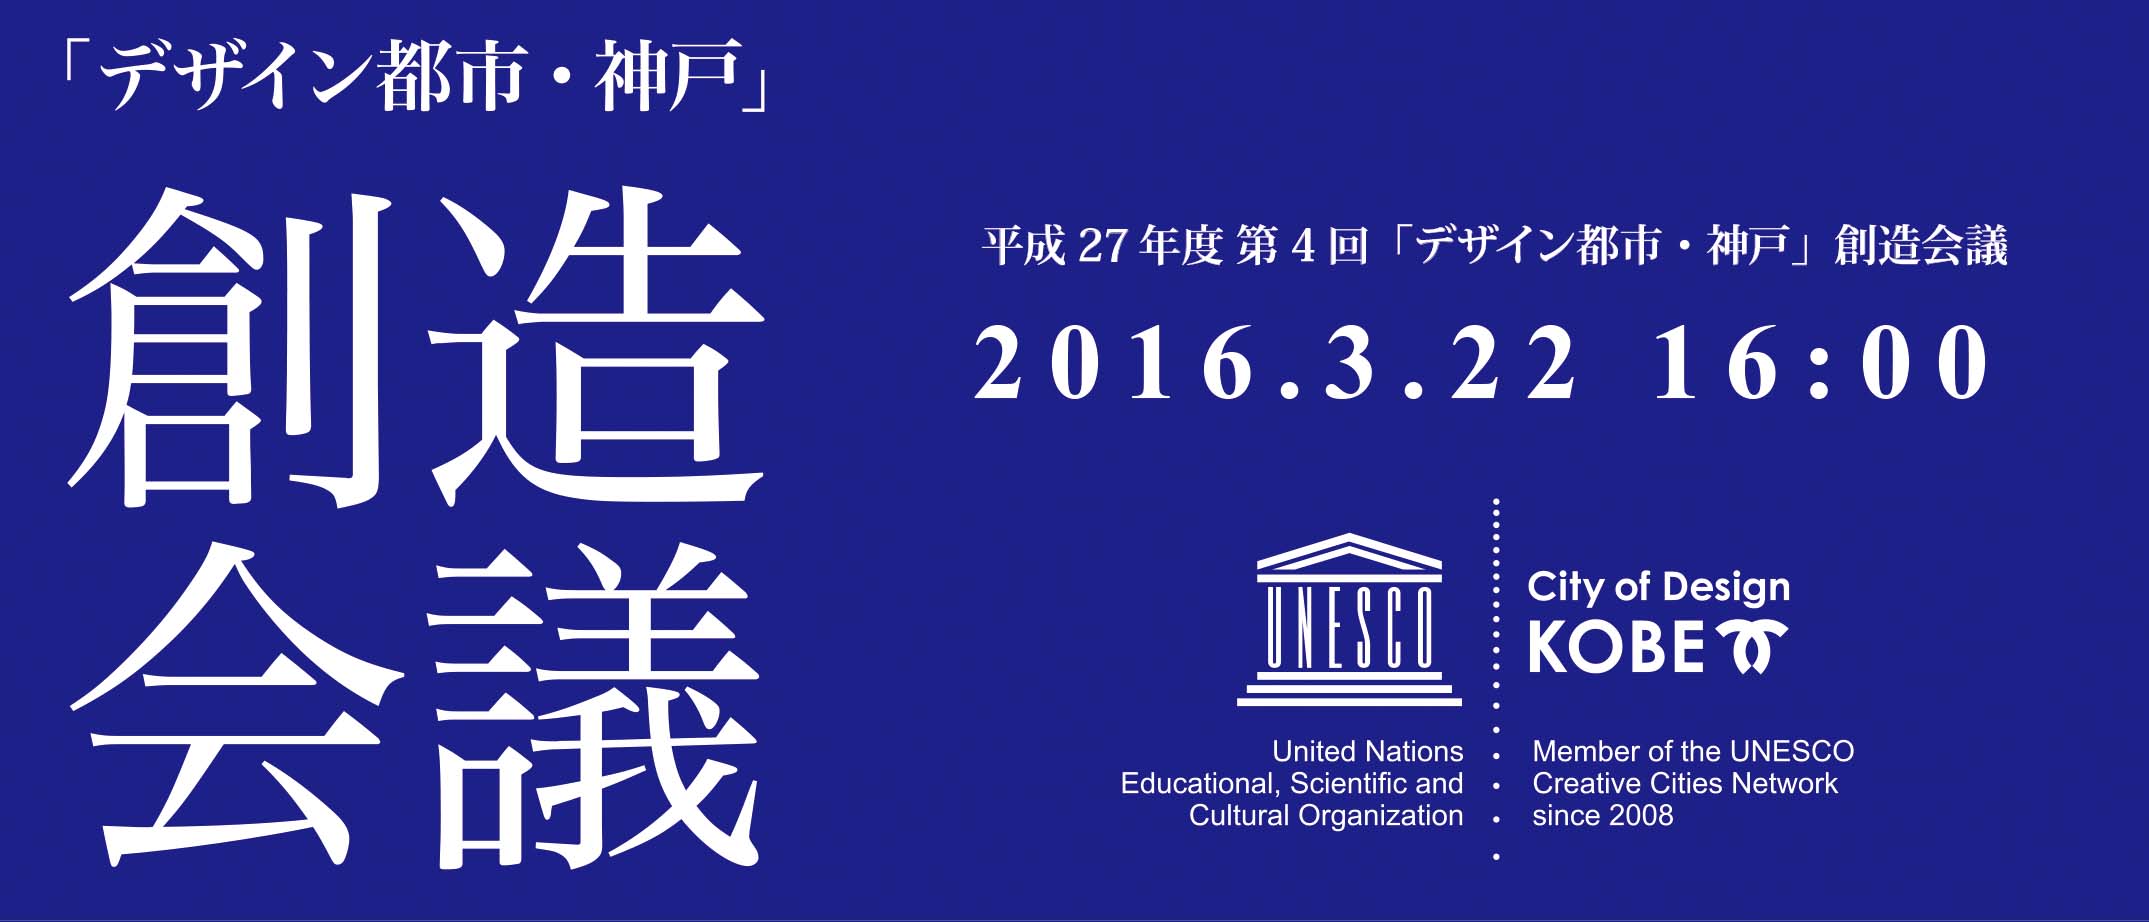 平成27年度 第4回「デザイン都市・神戸」創造会議